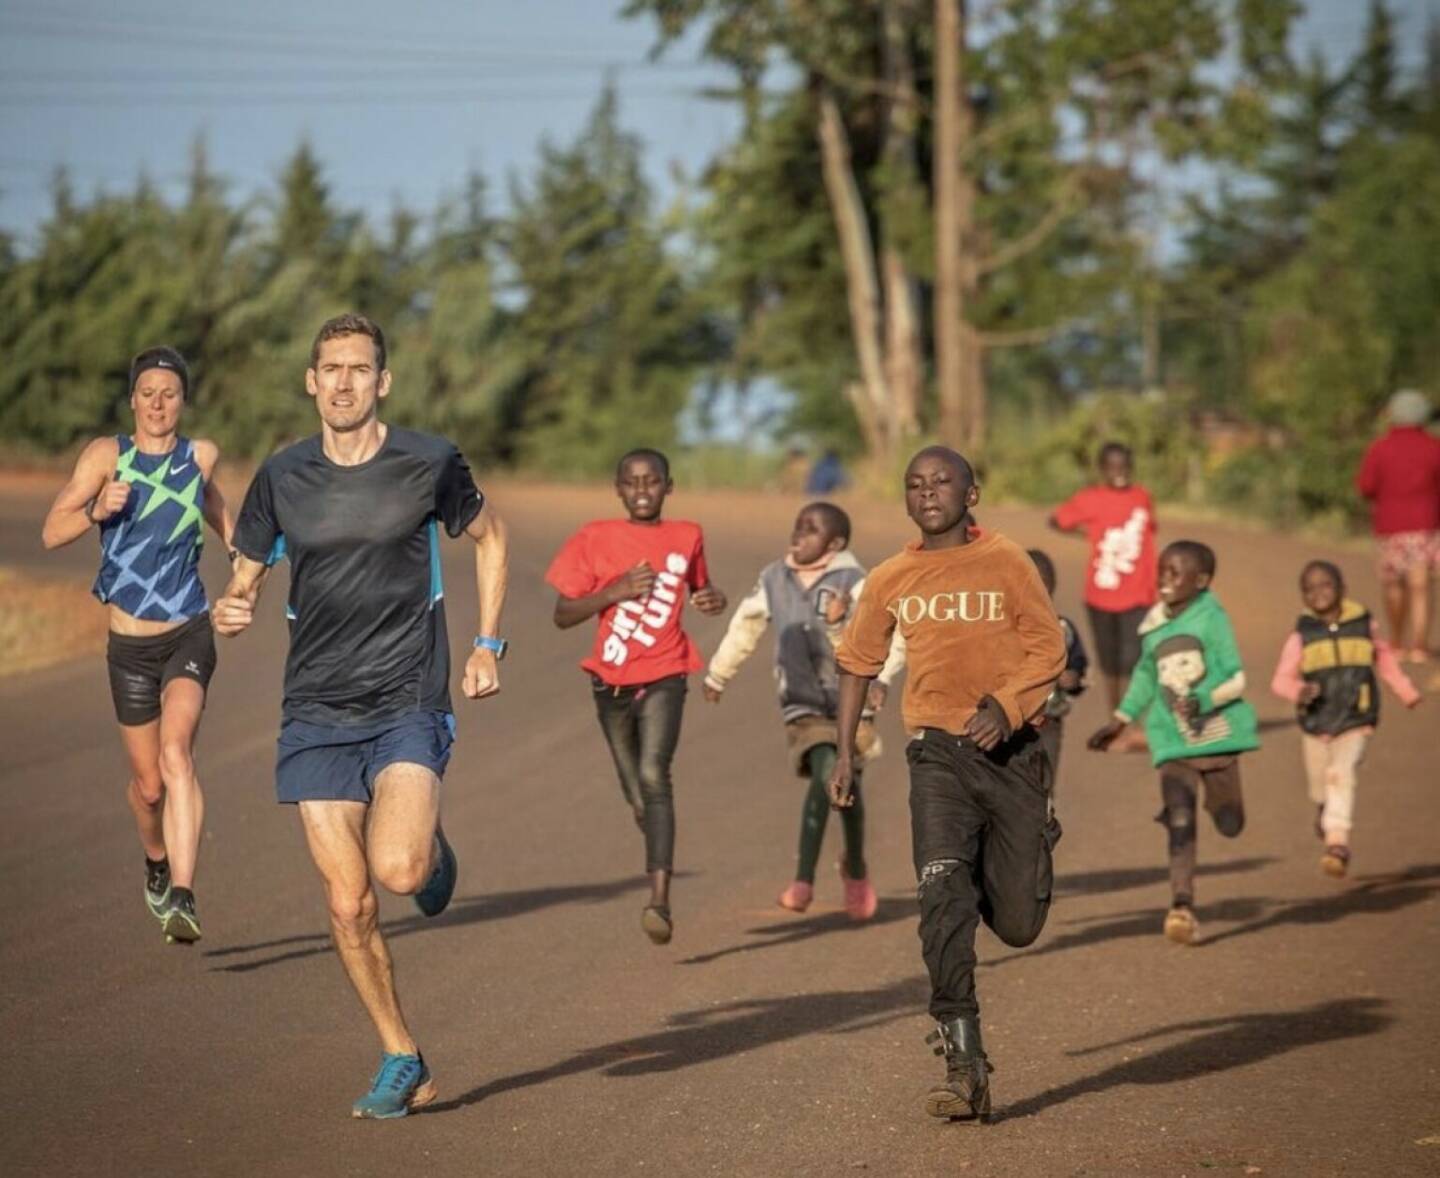 Tanja Stroschneider, Andreas Vojta Run Kenia Afrika Yes (c) Wilhelm Lilge
Von: https://www.instagram.com/tstroschneidertri// (Tanja Stroschneider. Triathletin https://youtu.be/8mBNx4YvAeI  http://www.sportgeschichte.at) 